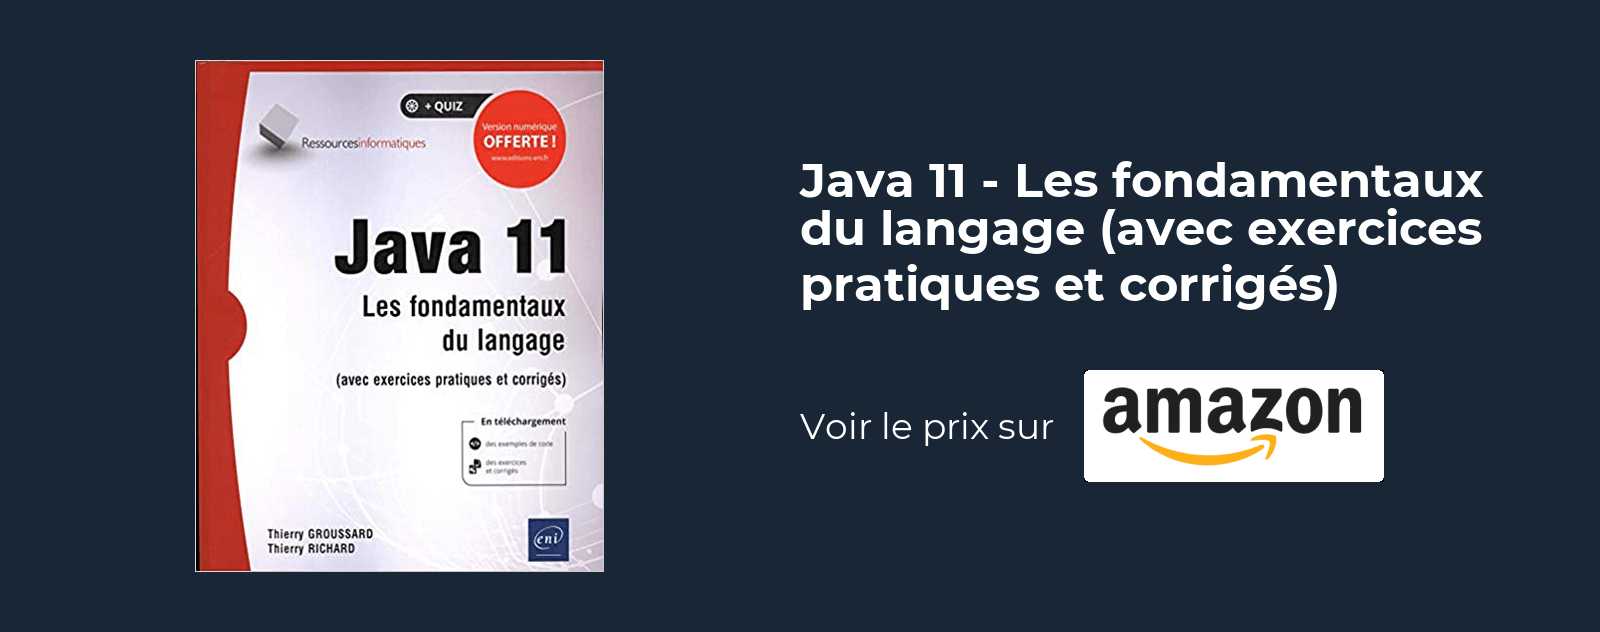 Java 11 - Les fondamentaux du langage avec exercices pratiques et corrigés